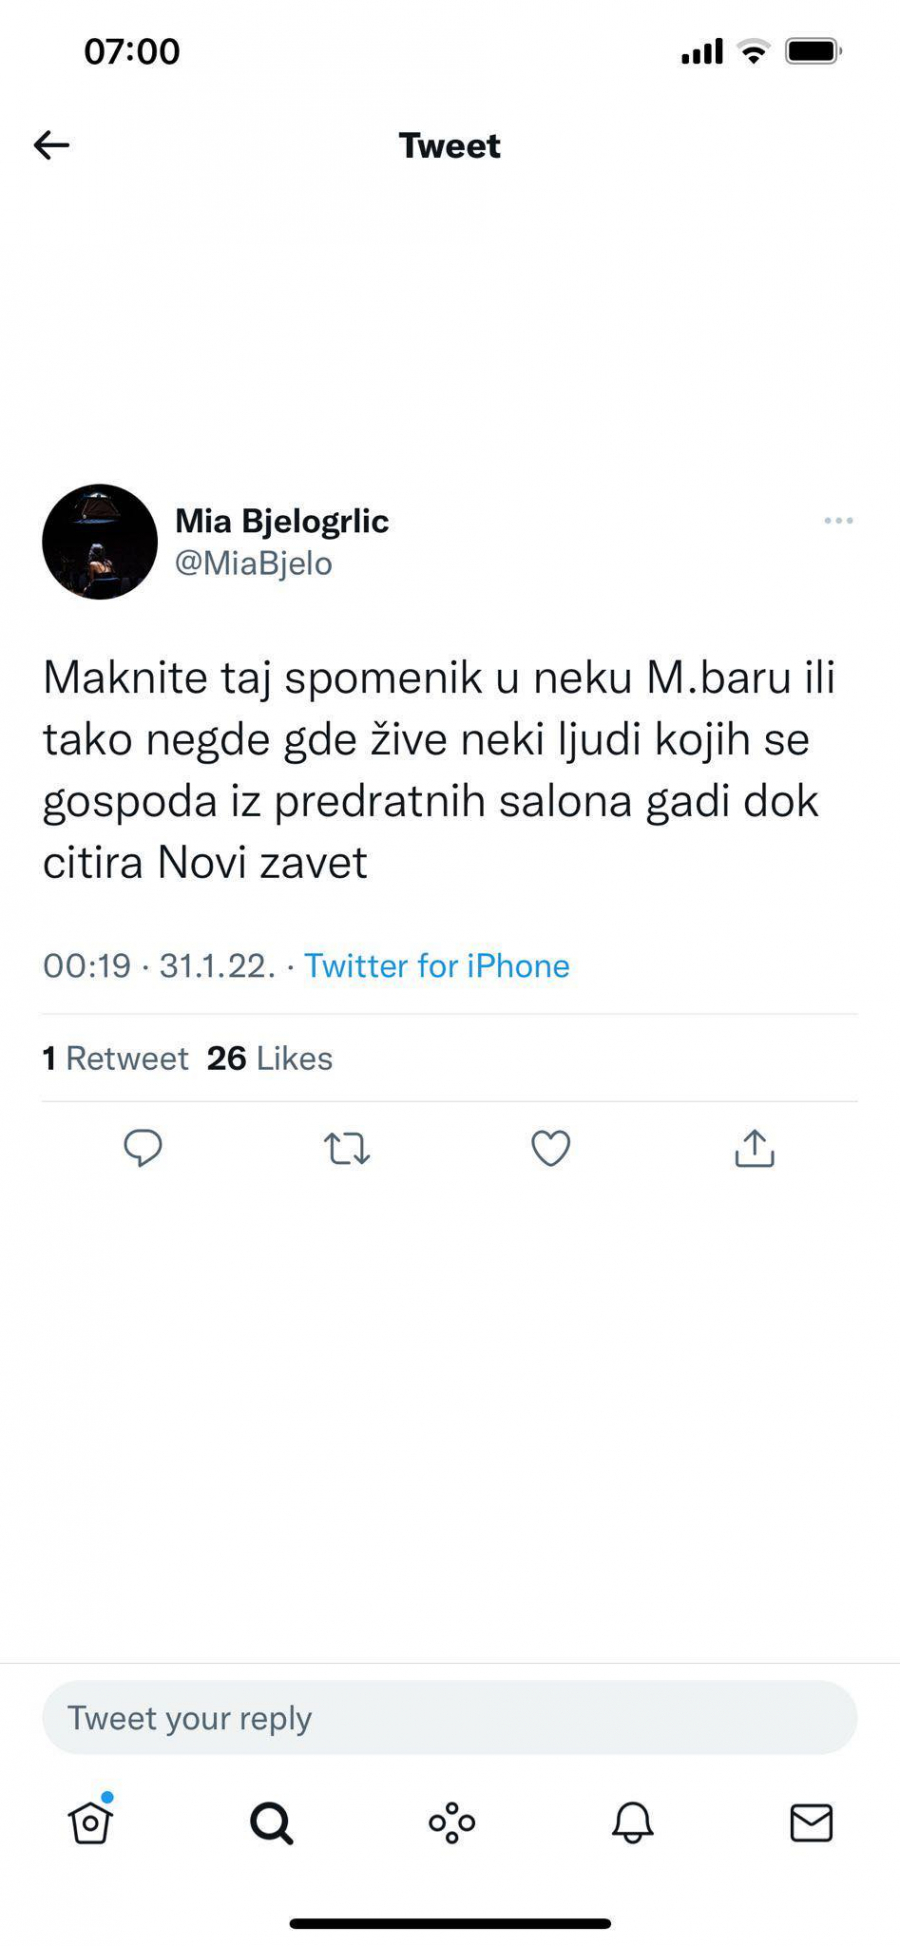 DETONIRALA ĐILASOVCE Mia Bjelogrlić o Jankoviću u Markoviću: Gospoda iz predratnih salona gade se ljudi iz Marinkove bare!